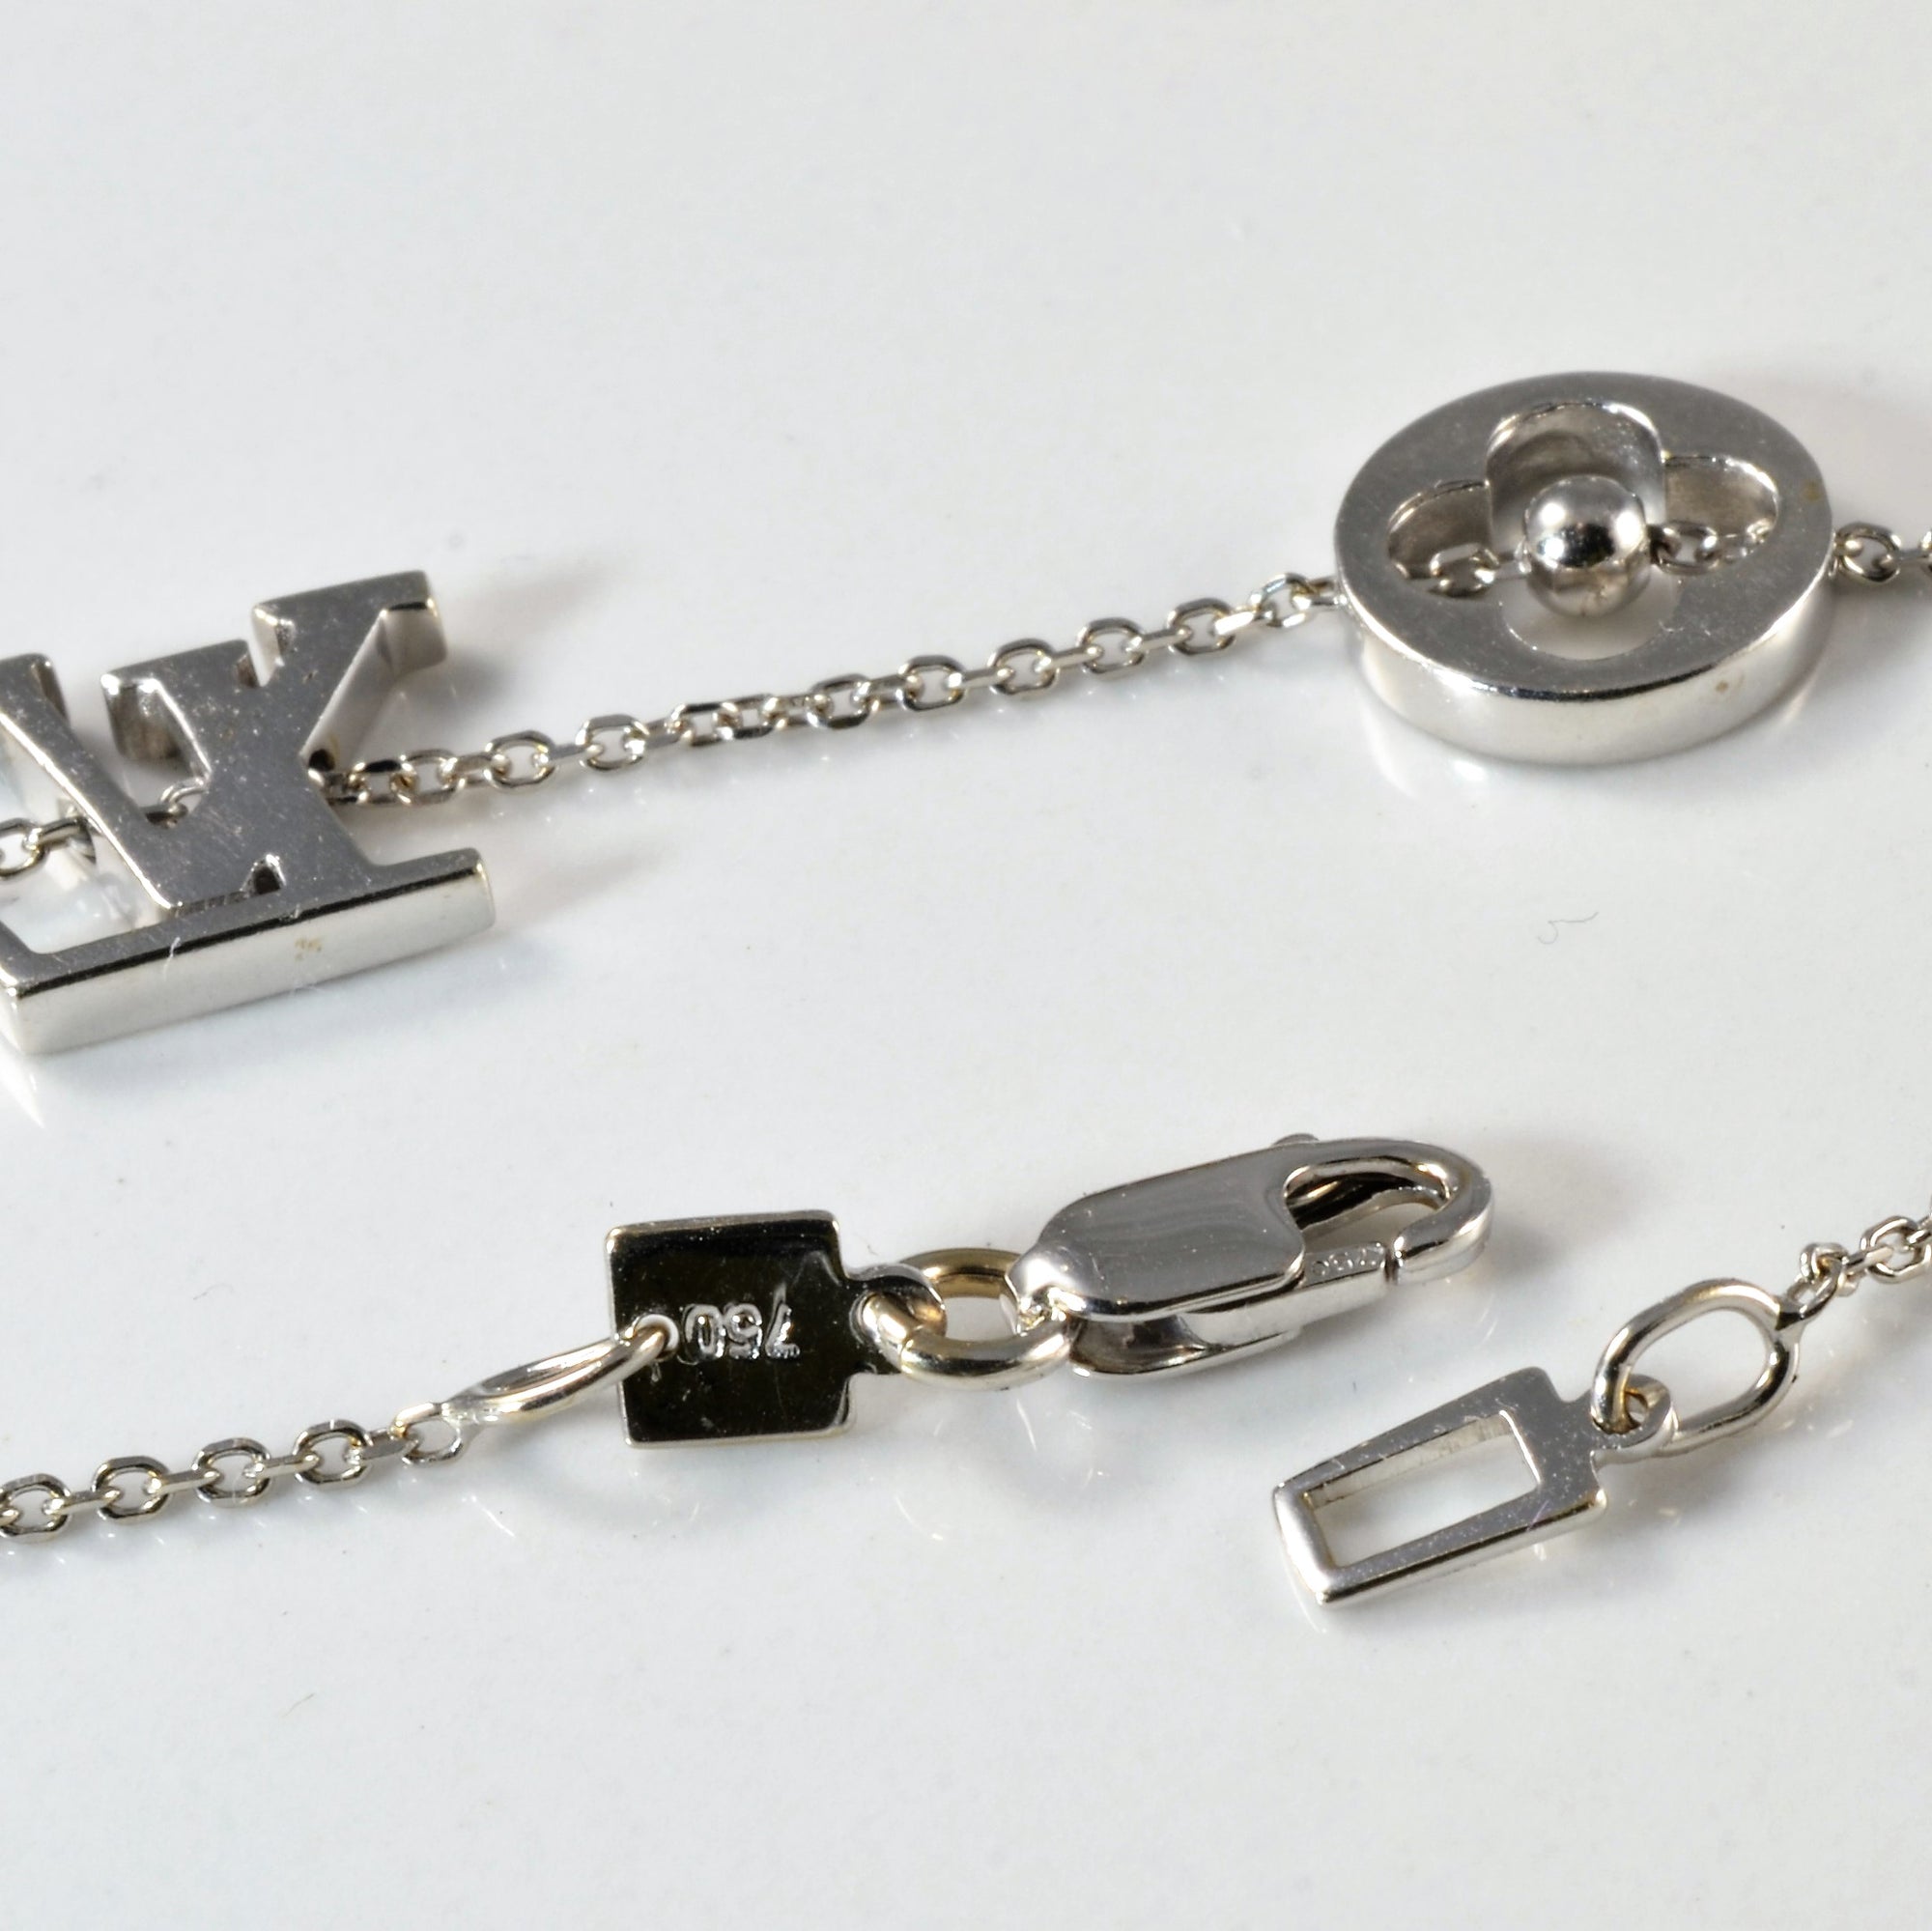 Louis Vuitton' Monogram Necklace | 15 